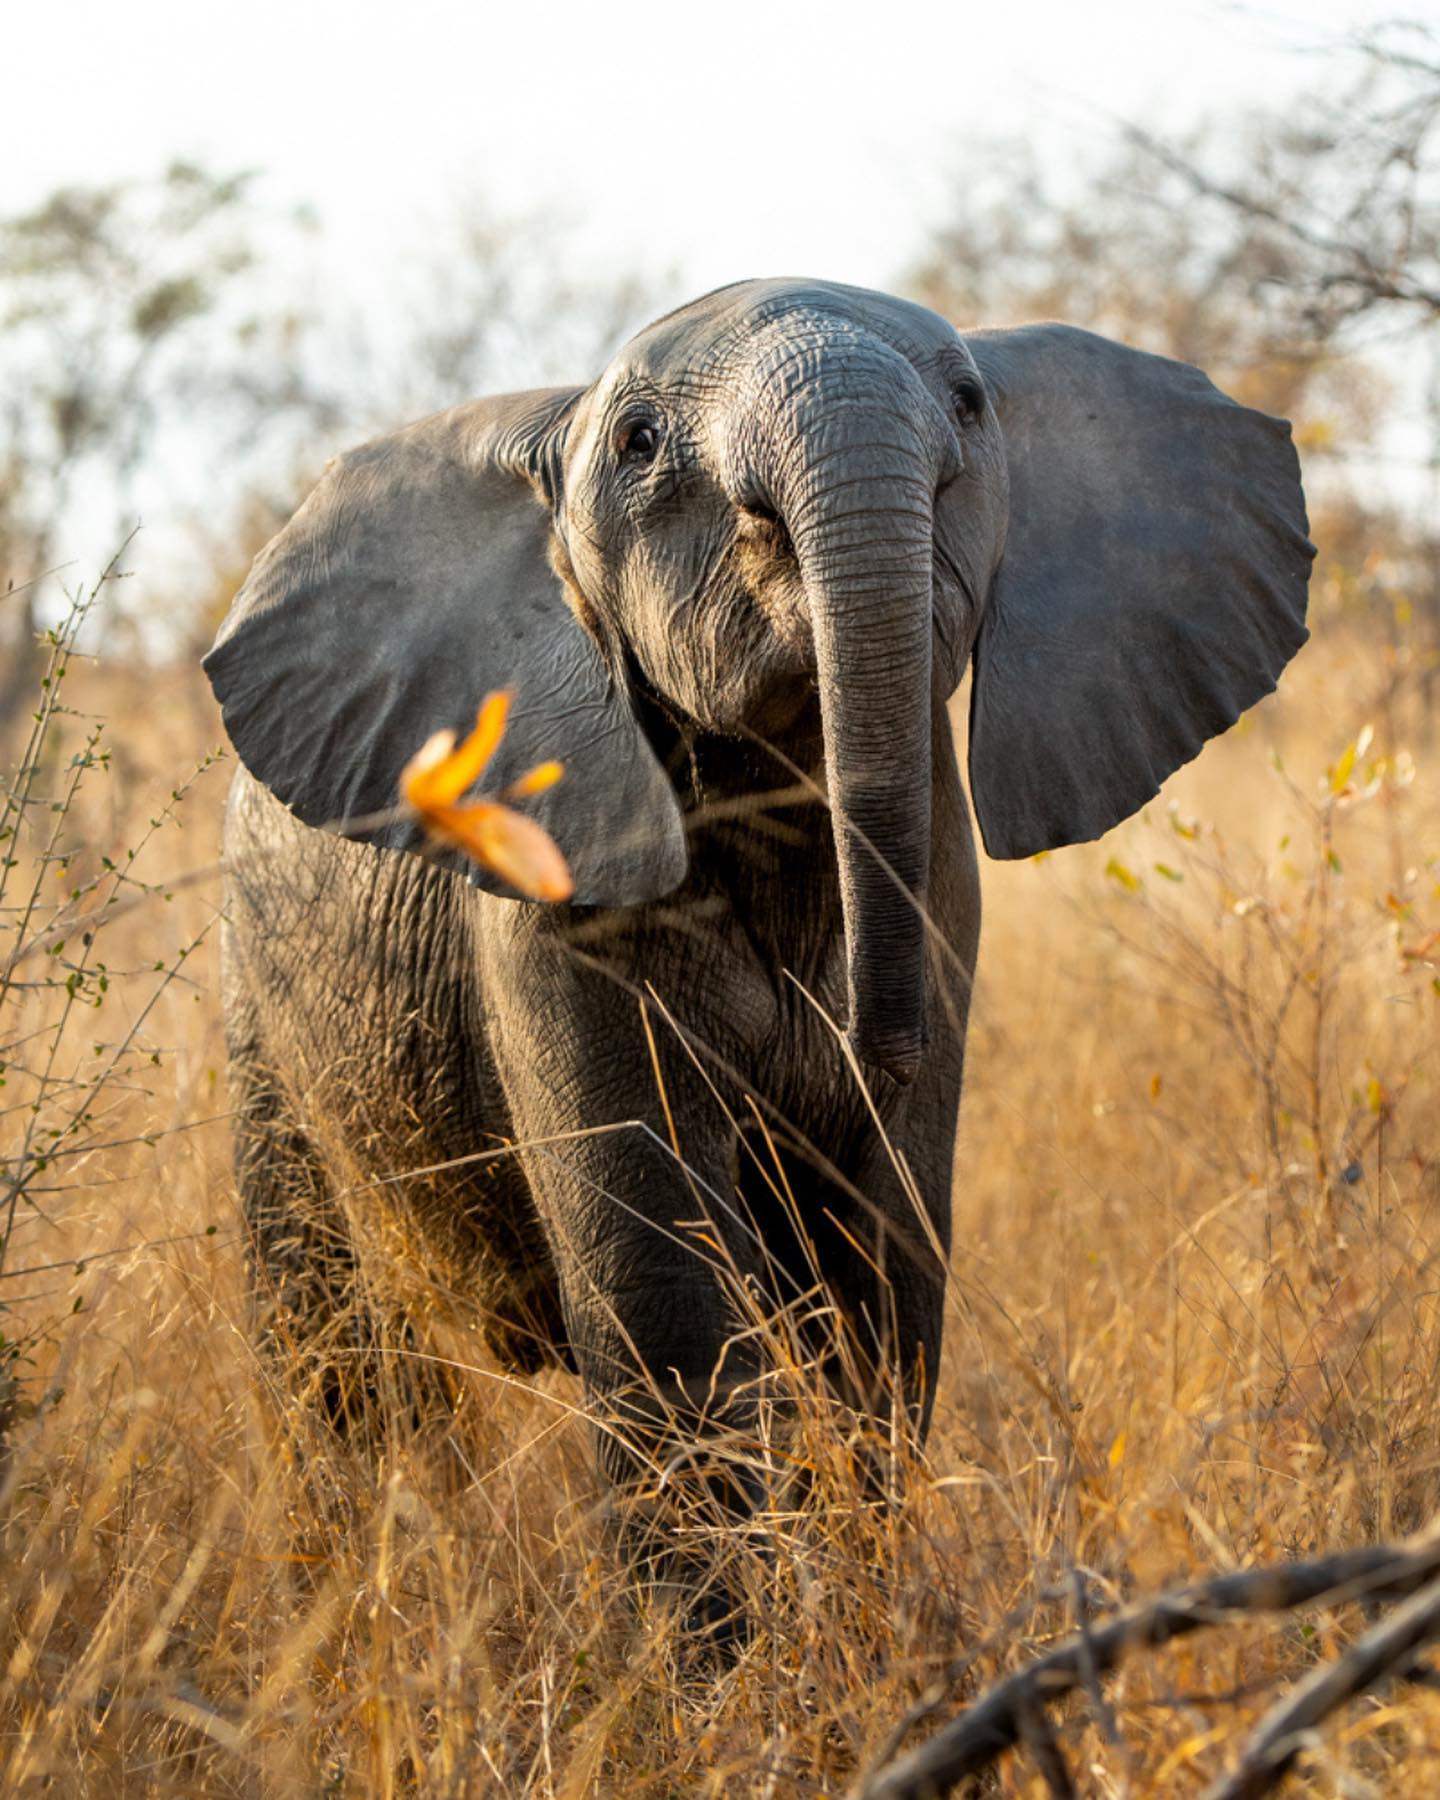 An elephant at Singita Ebony Lodge, South Africa. Photo: Singita Ebony Lodge